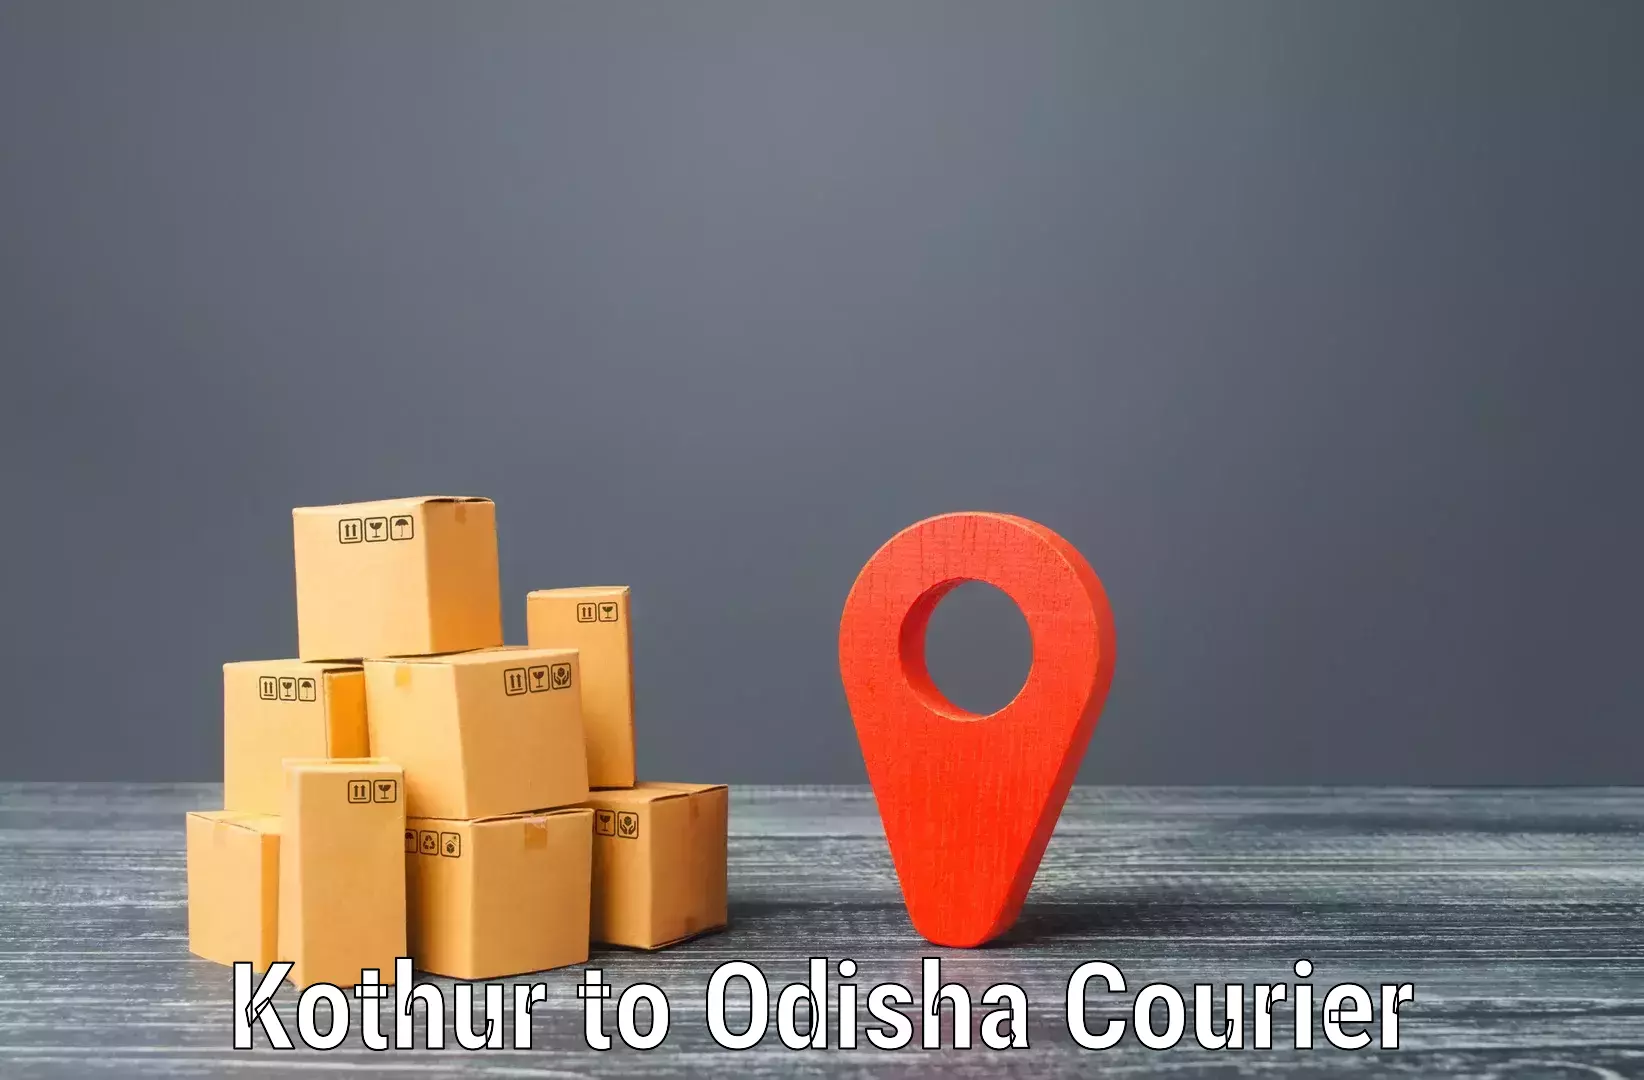 Tailored shipping plans Kothur to Kesinga